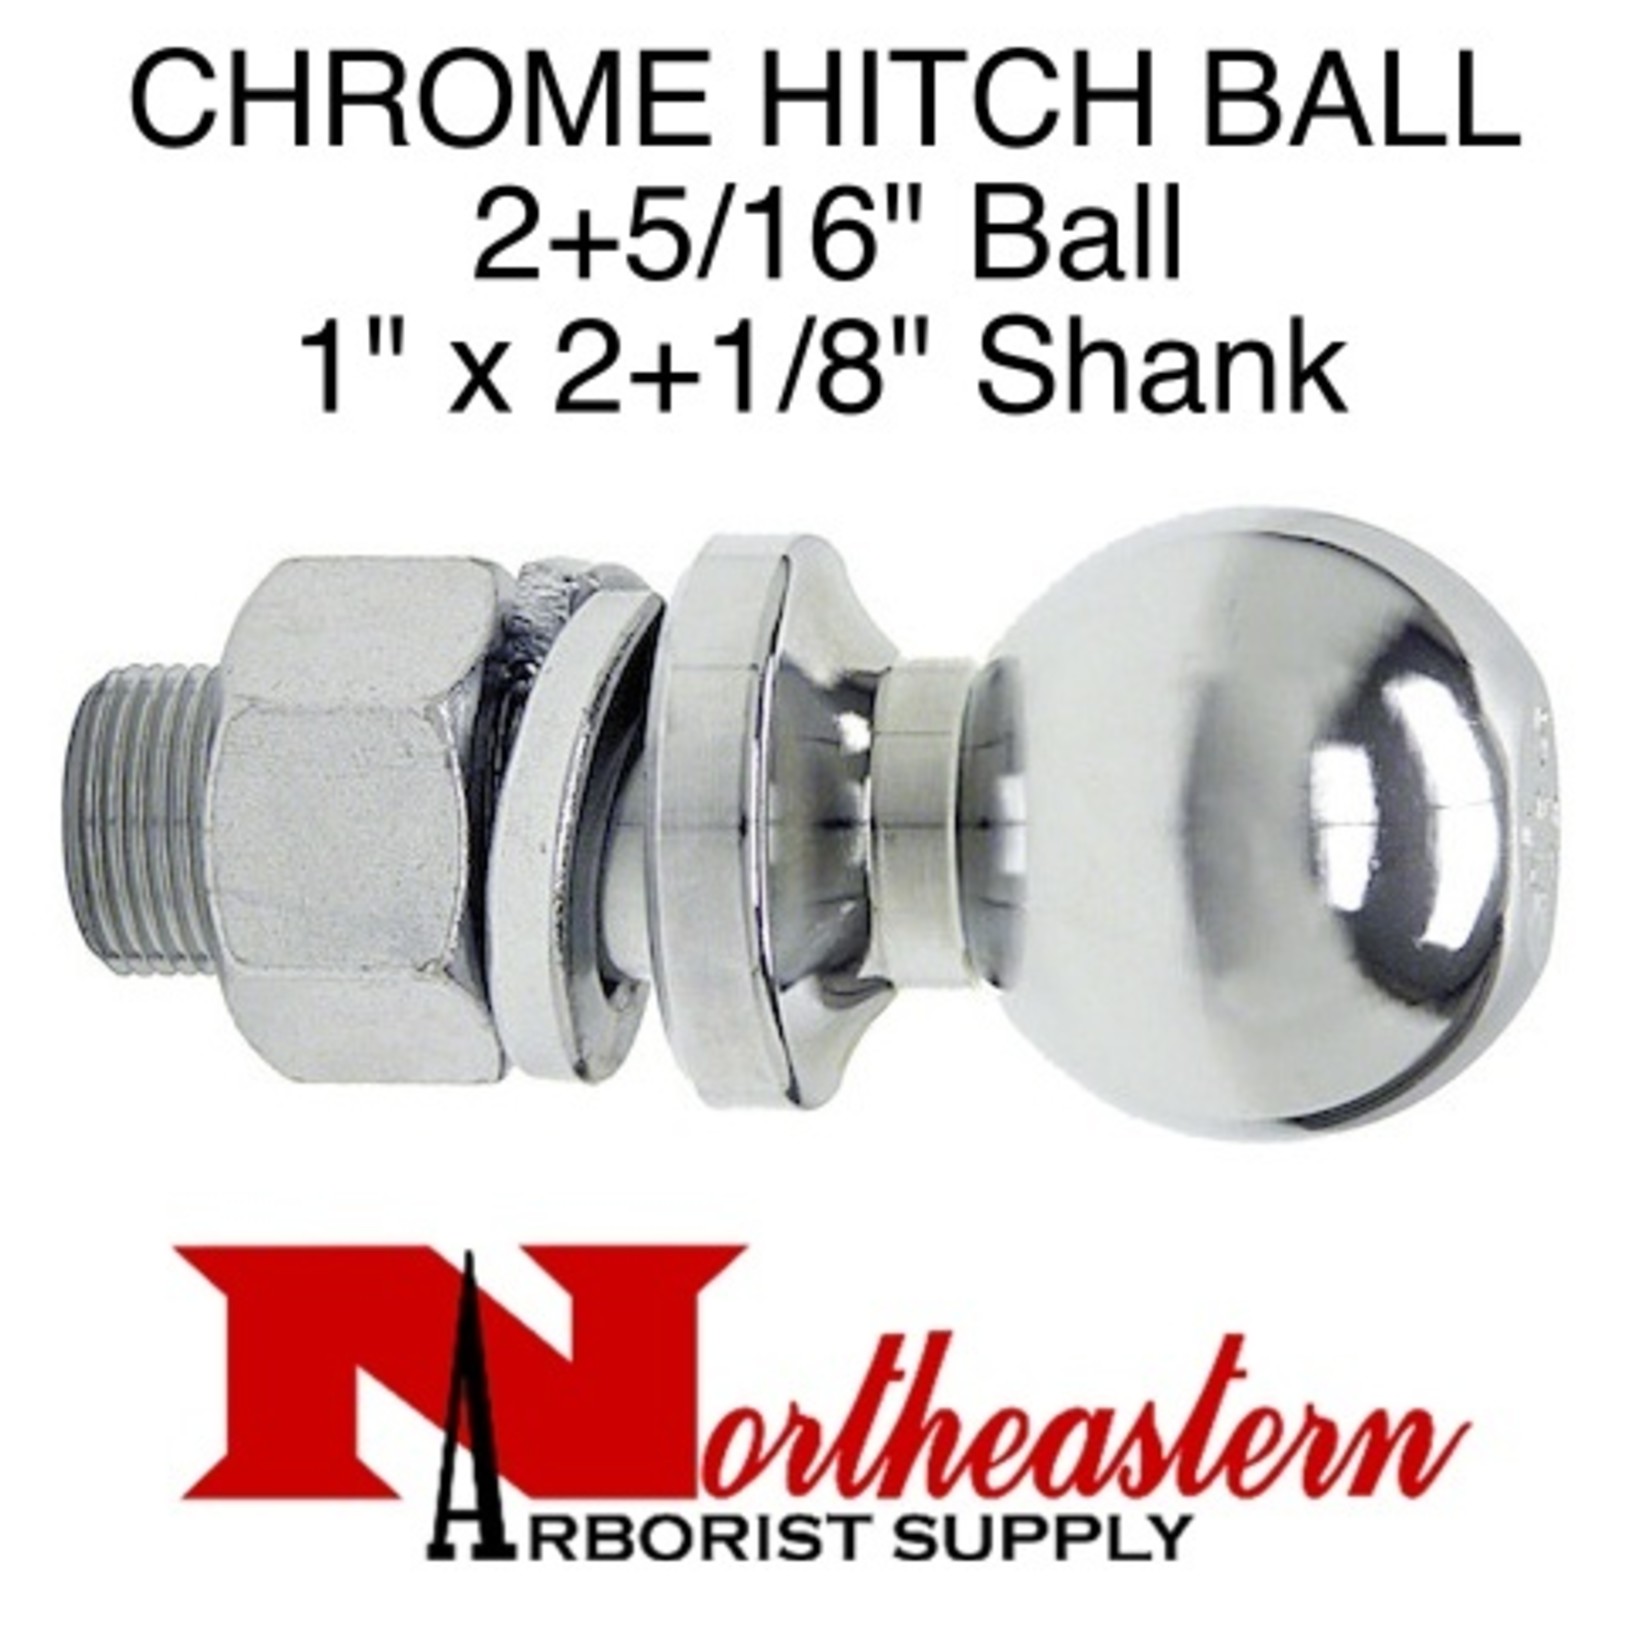 Buyers Hitch Ball 2+5/16" Shank Diameter 1" x 2+1/8" Shank Length, 7,500# M.G.T.W.